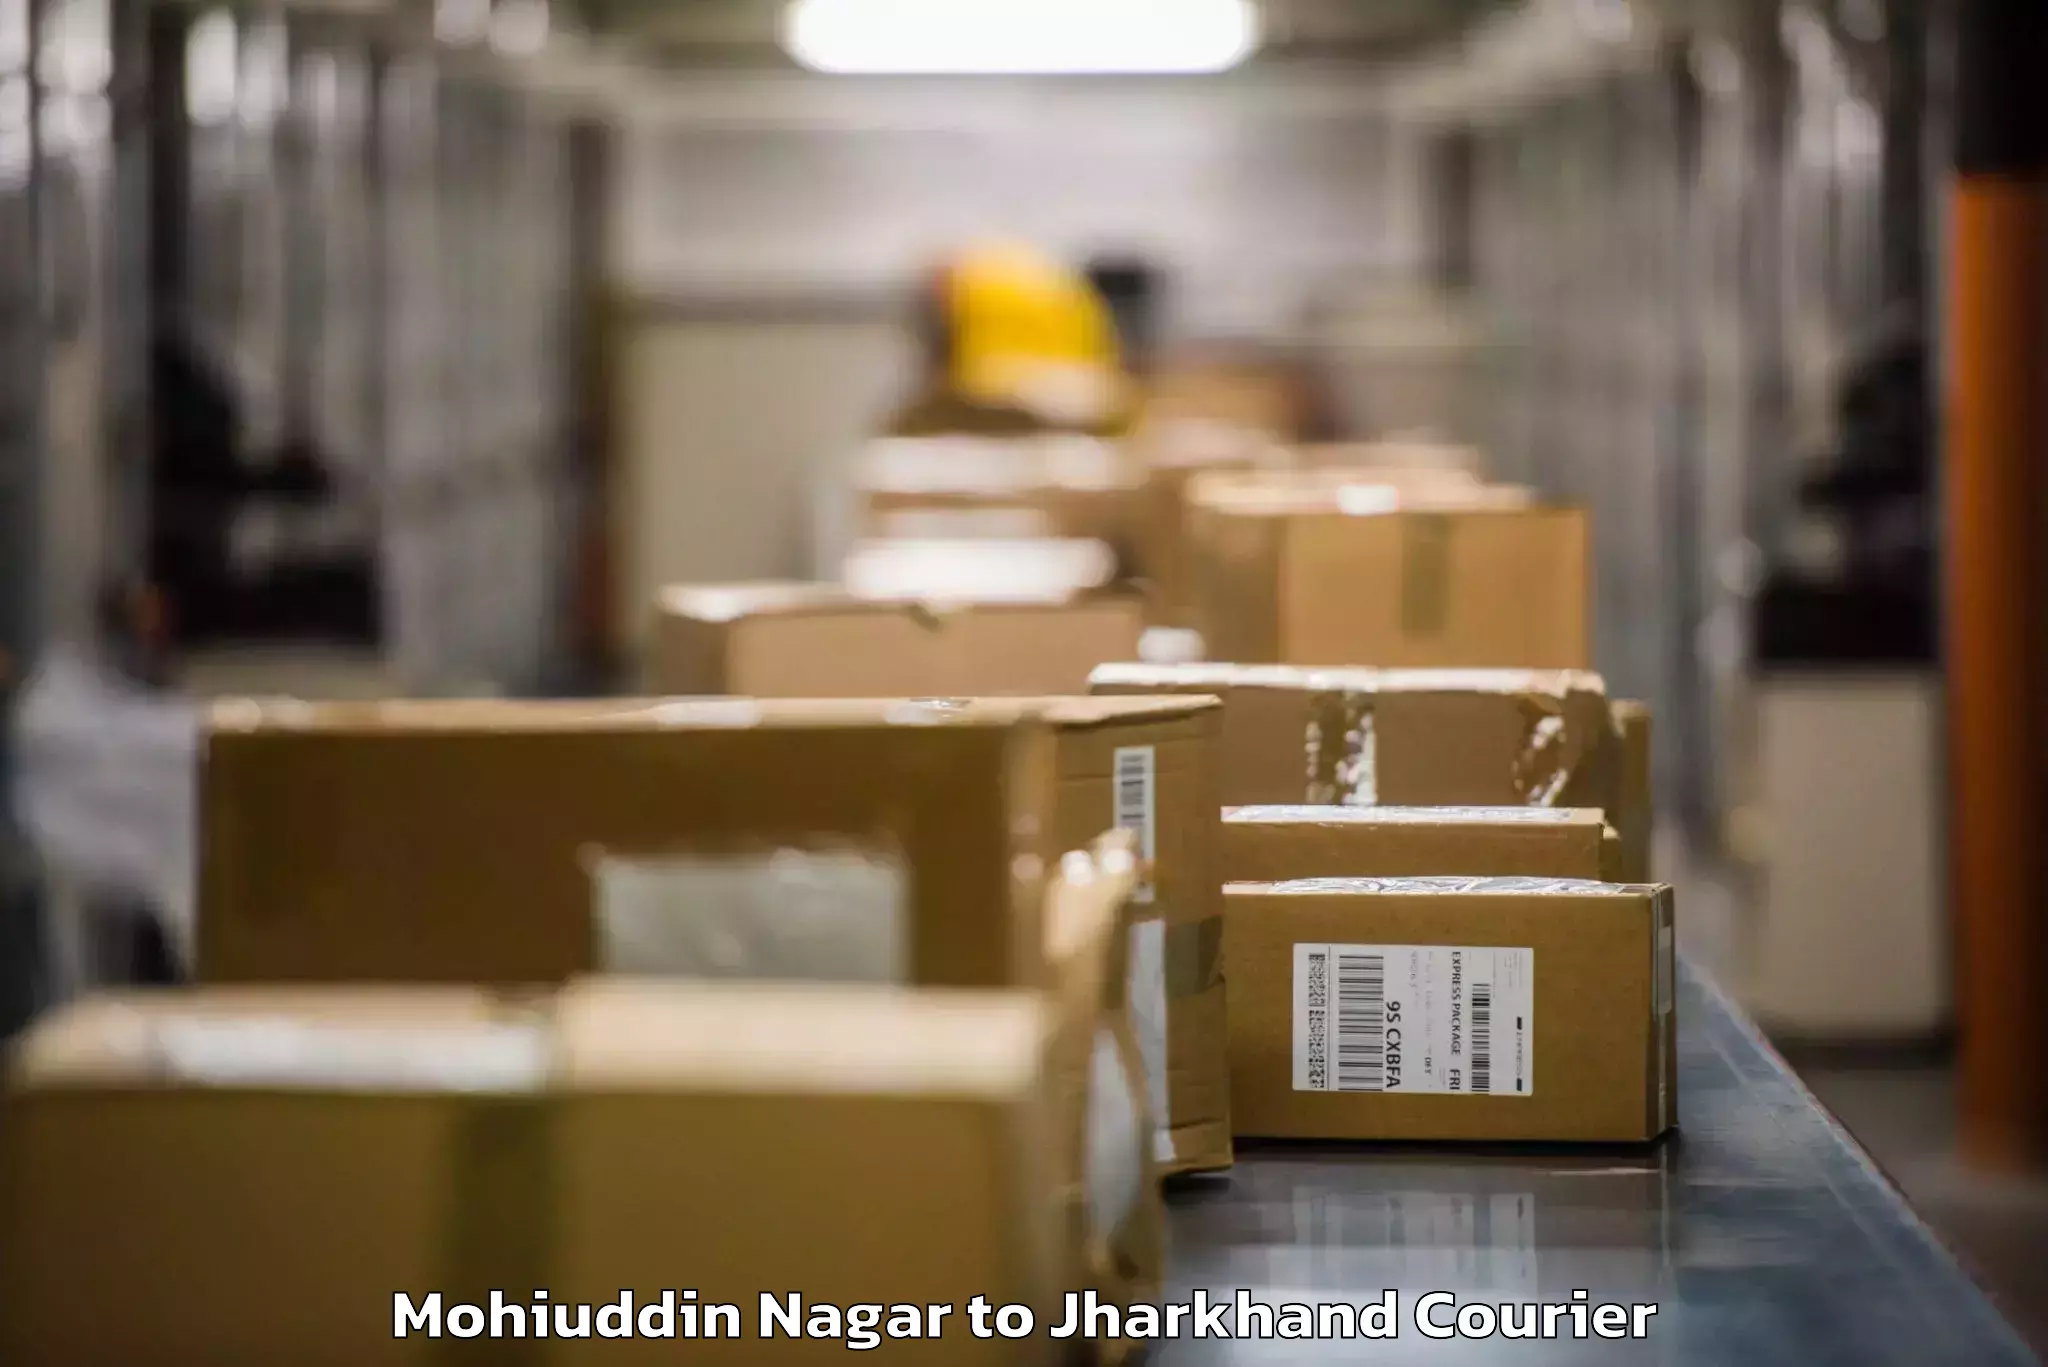 Baggage shipping optimization Mohiuddin Nagar to Madhupur